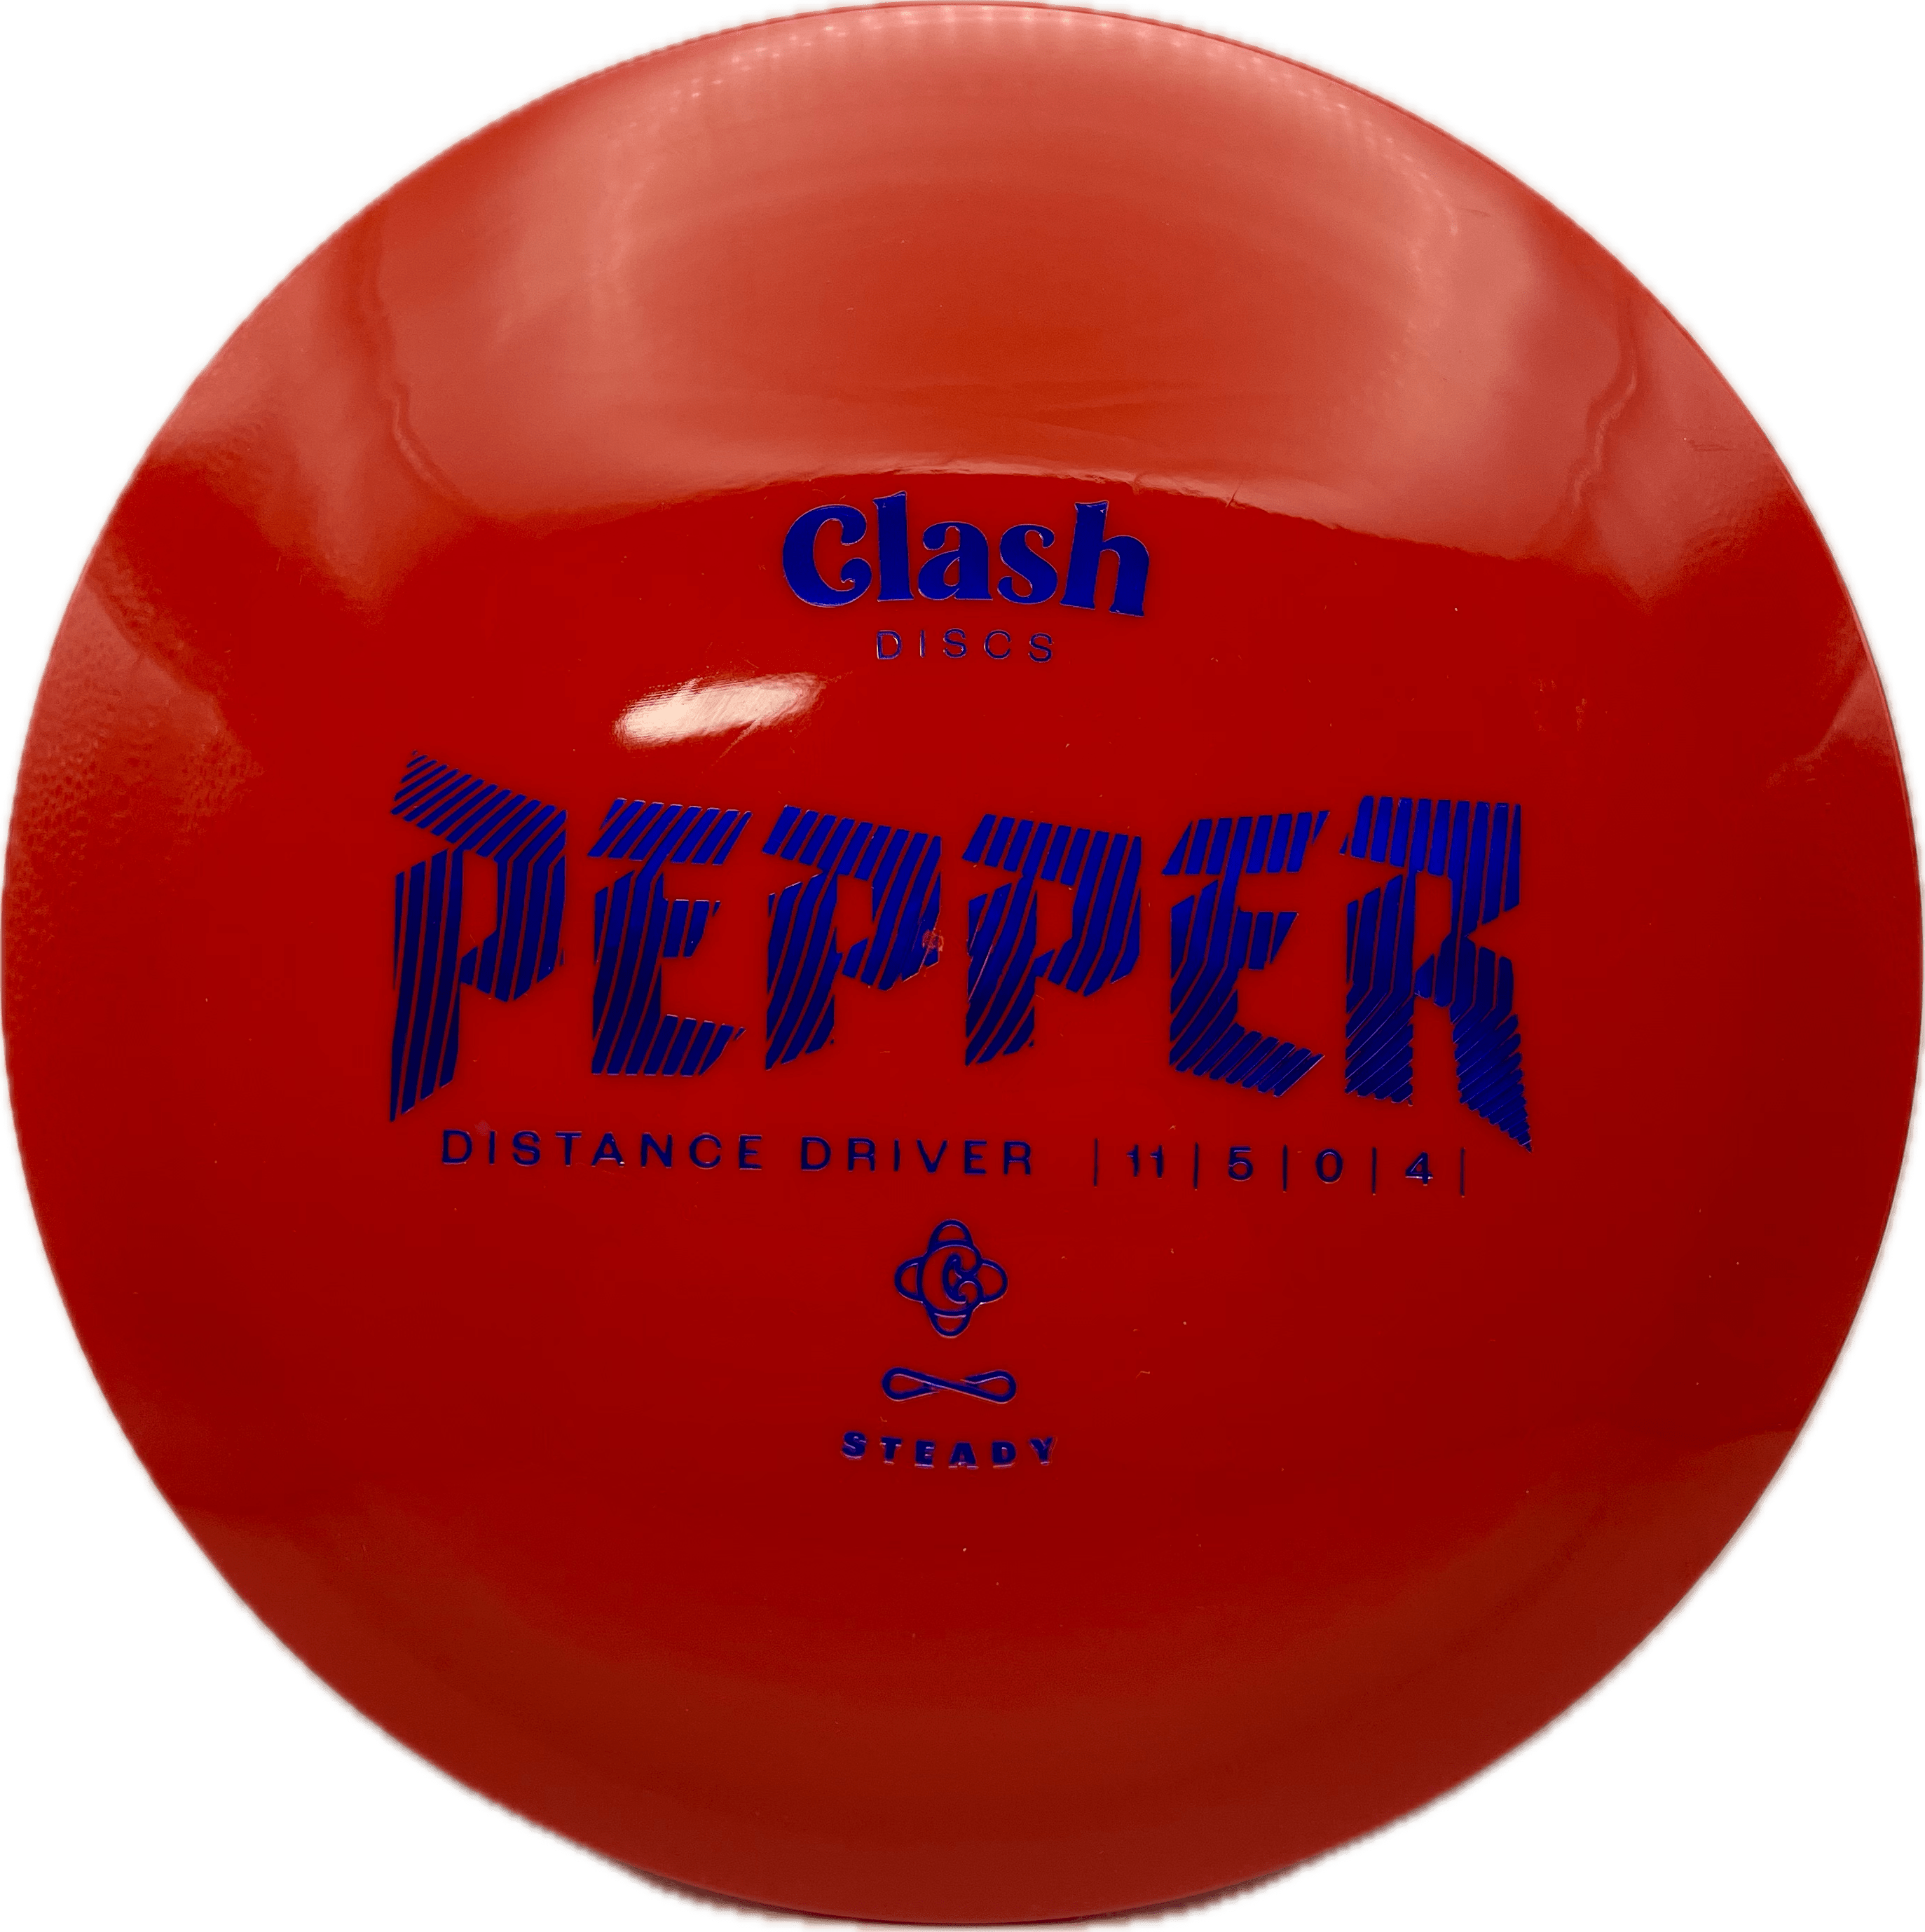 Clash Pepper